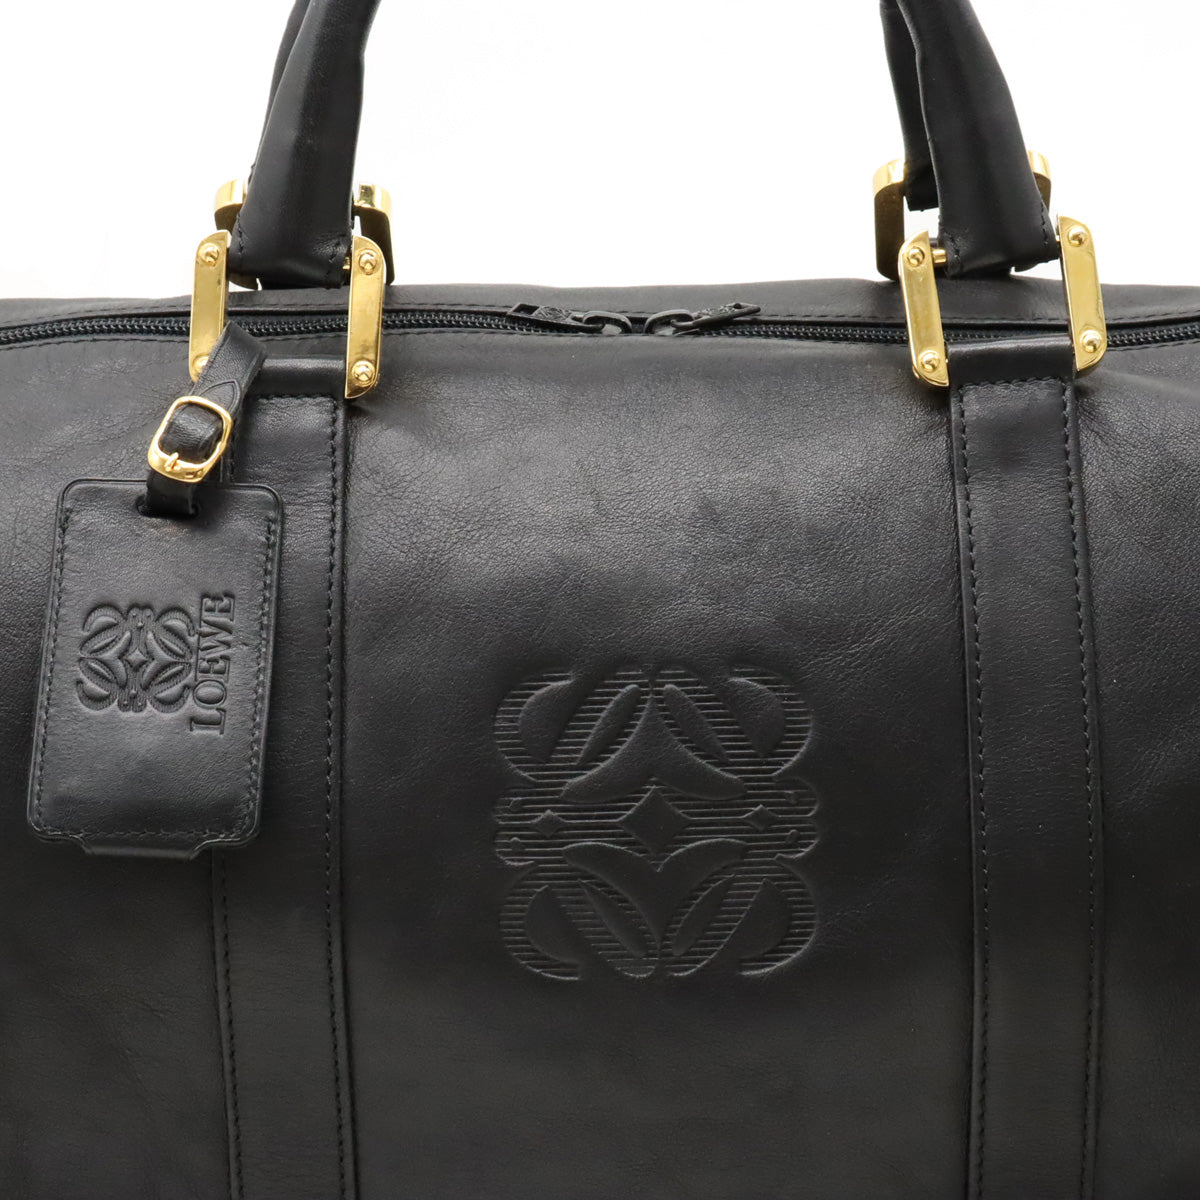 LOEWE LOEWE Amazon 50 Anagram Boston Bag Travel Bag Travel Bag 2WAY Shoulder Bag Black Black Gold  Blumin